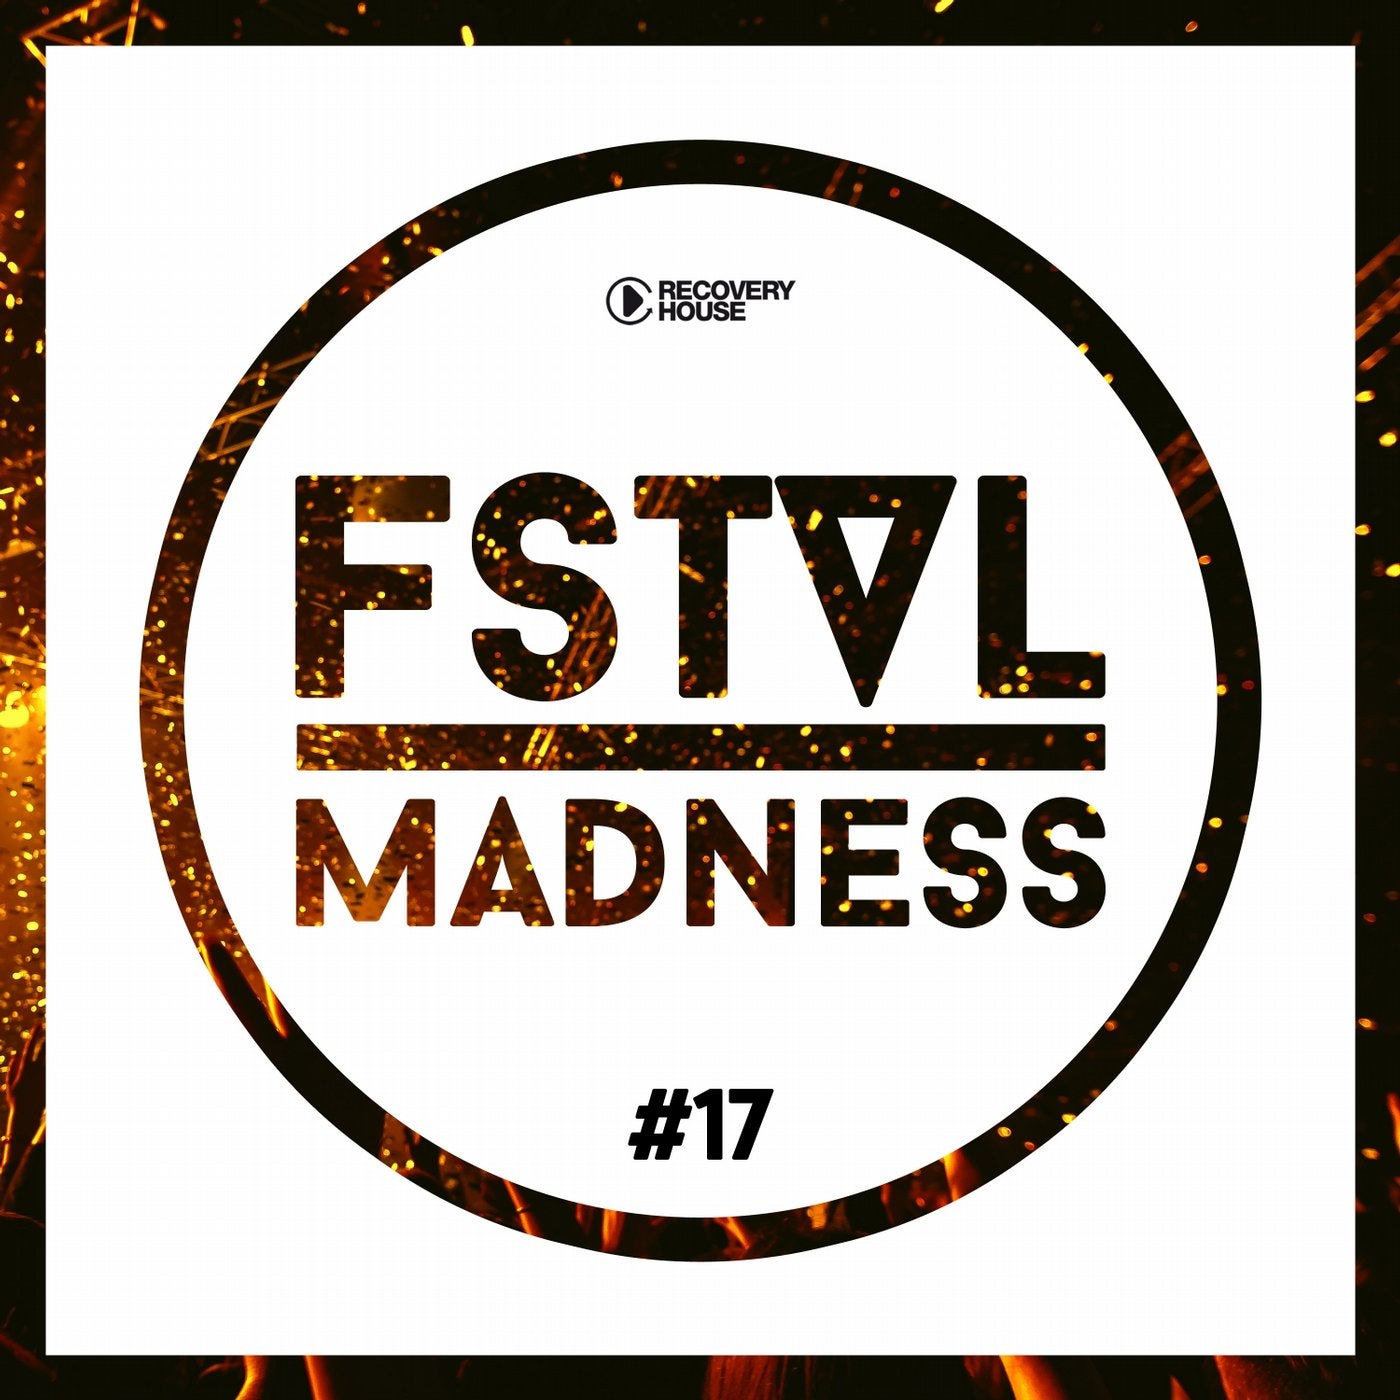 FSTVL Madness Vol. 17 - Pure Festival Sounds